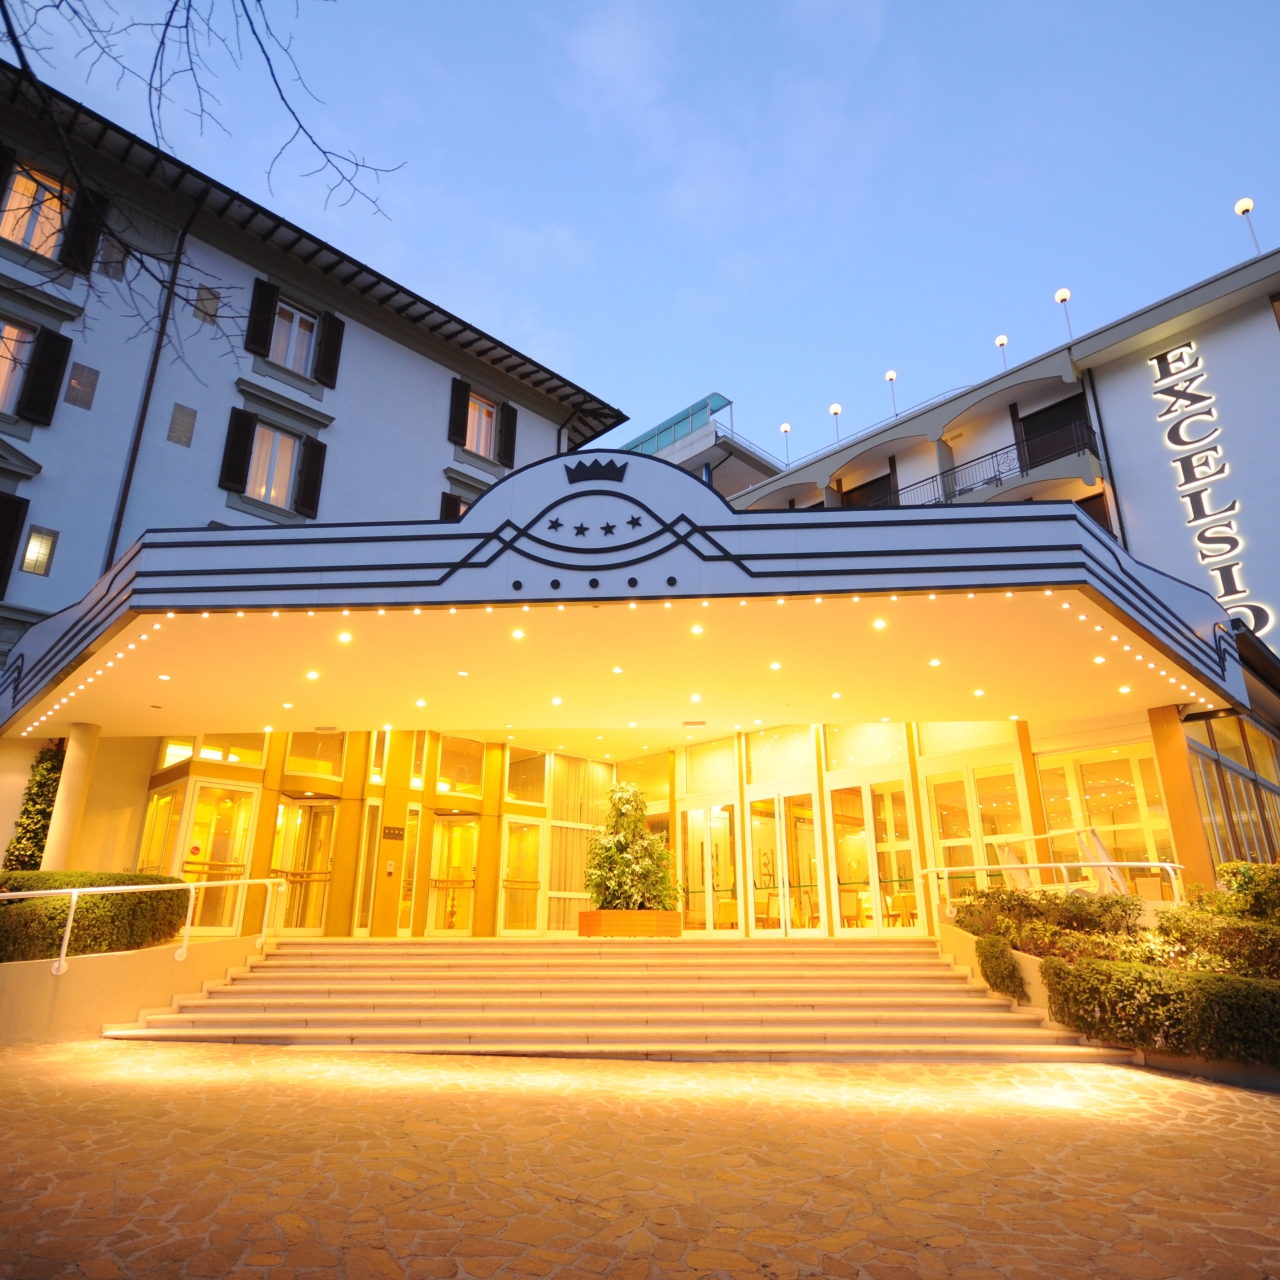 Grand Hotel Excelsior en Chianciano Terme en HRS con servicios gratuitos